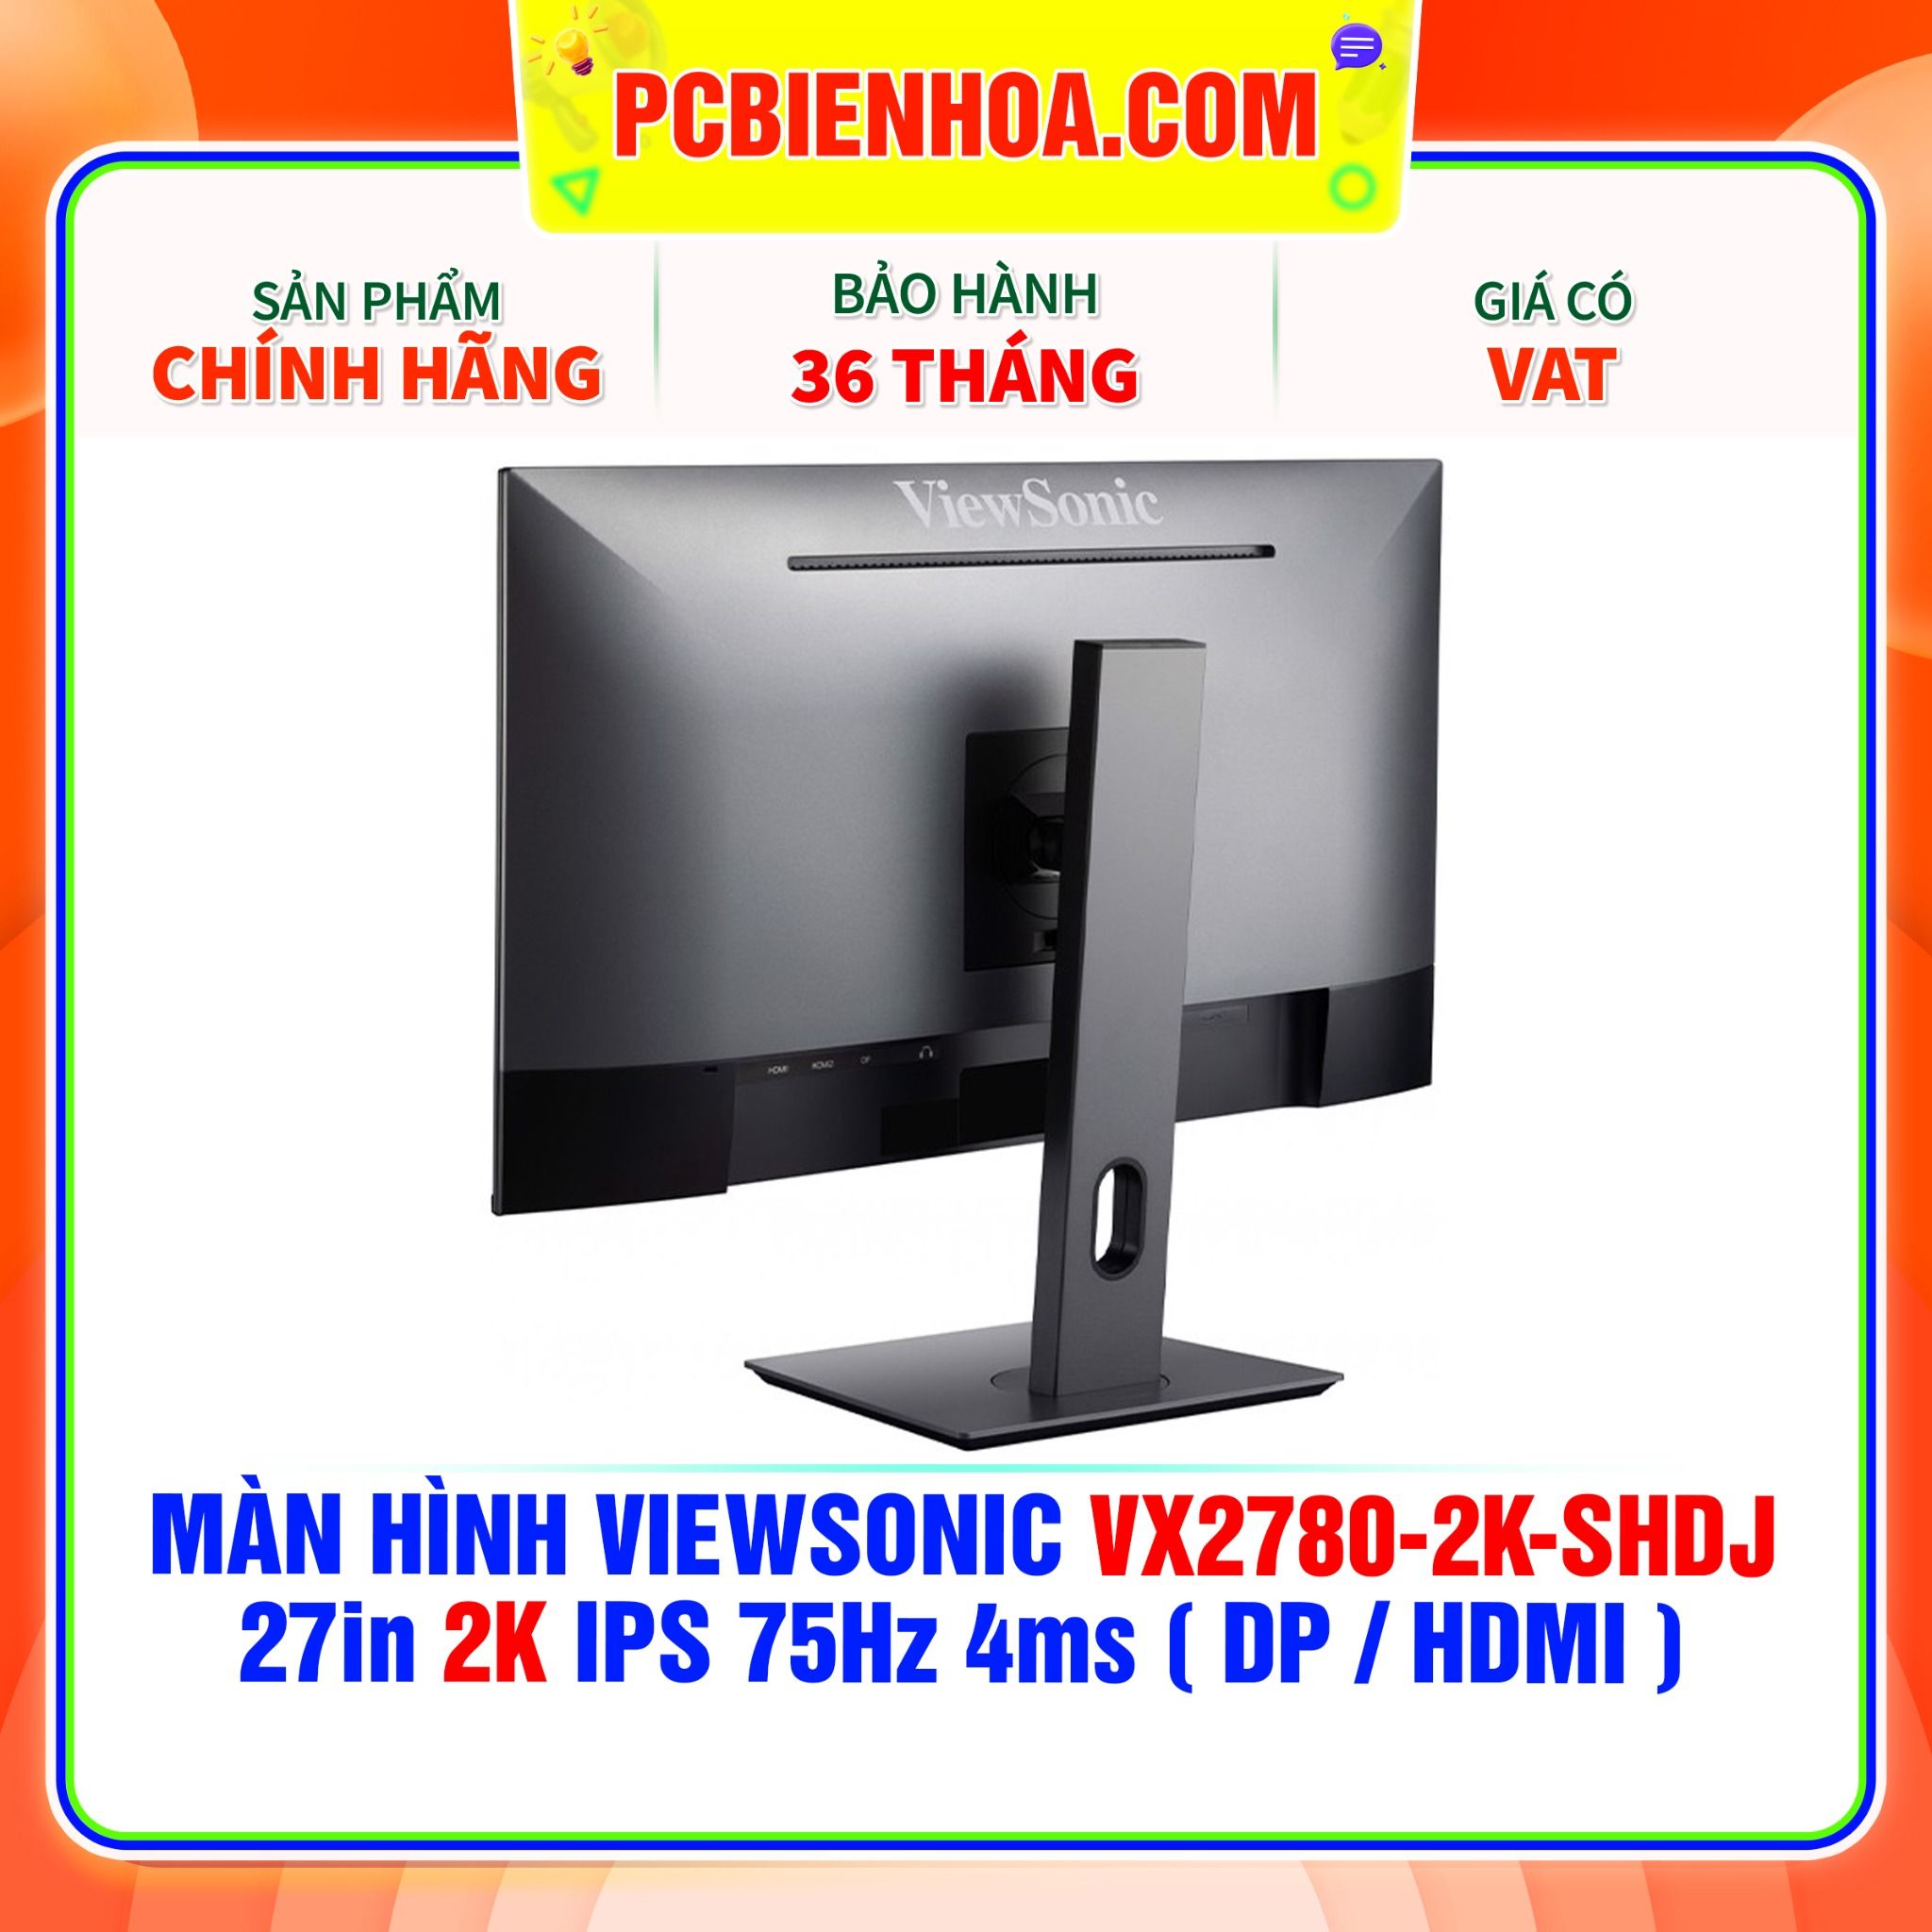  MÀN HÌNH VIEWSONIC VX2780-2K-SHDJ 27in 2K IPS 75Hz 4ms ( DP / HDMI ) 